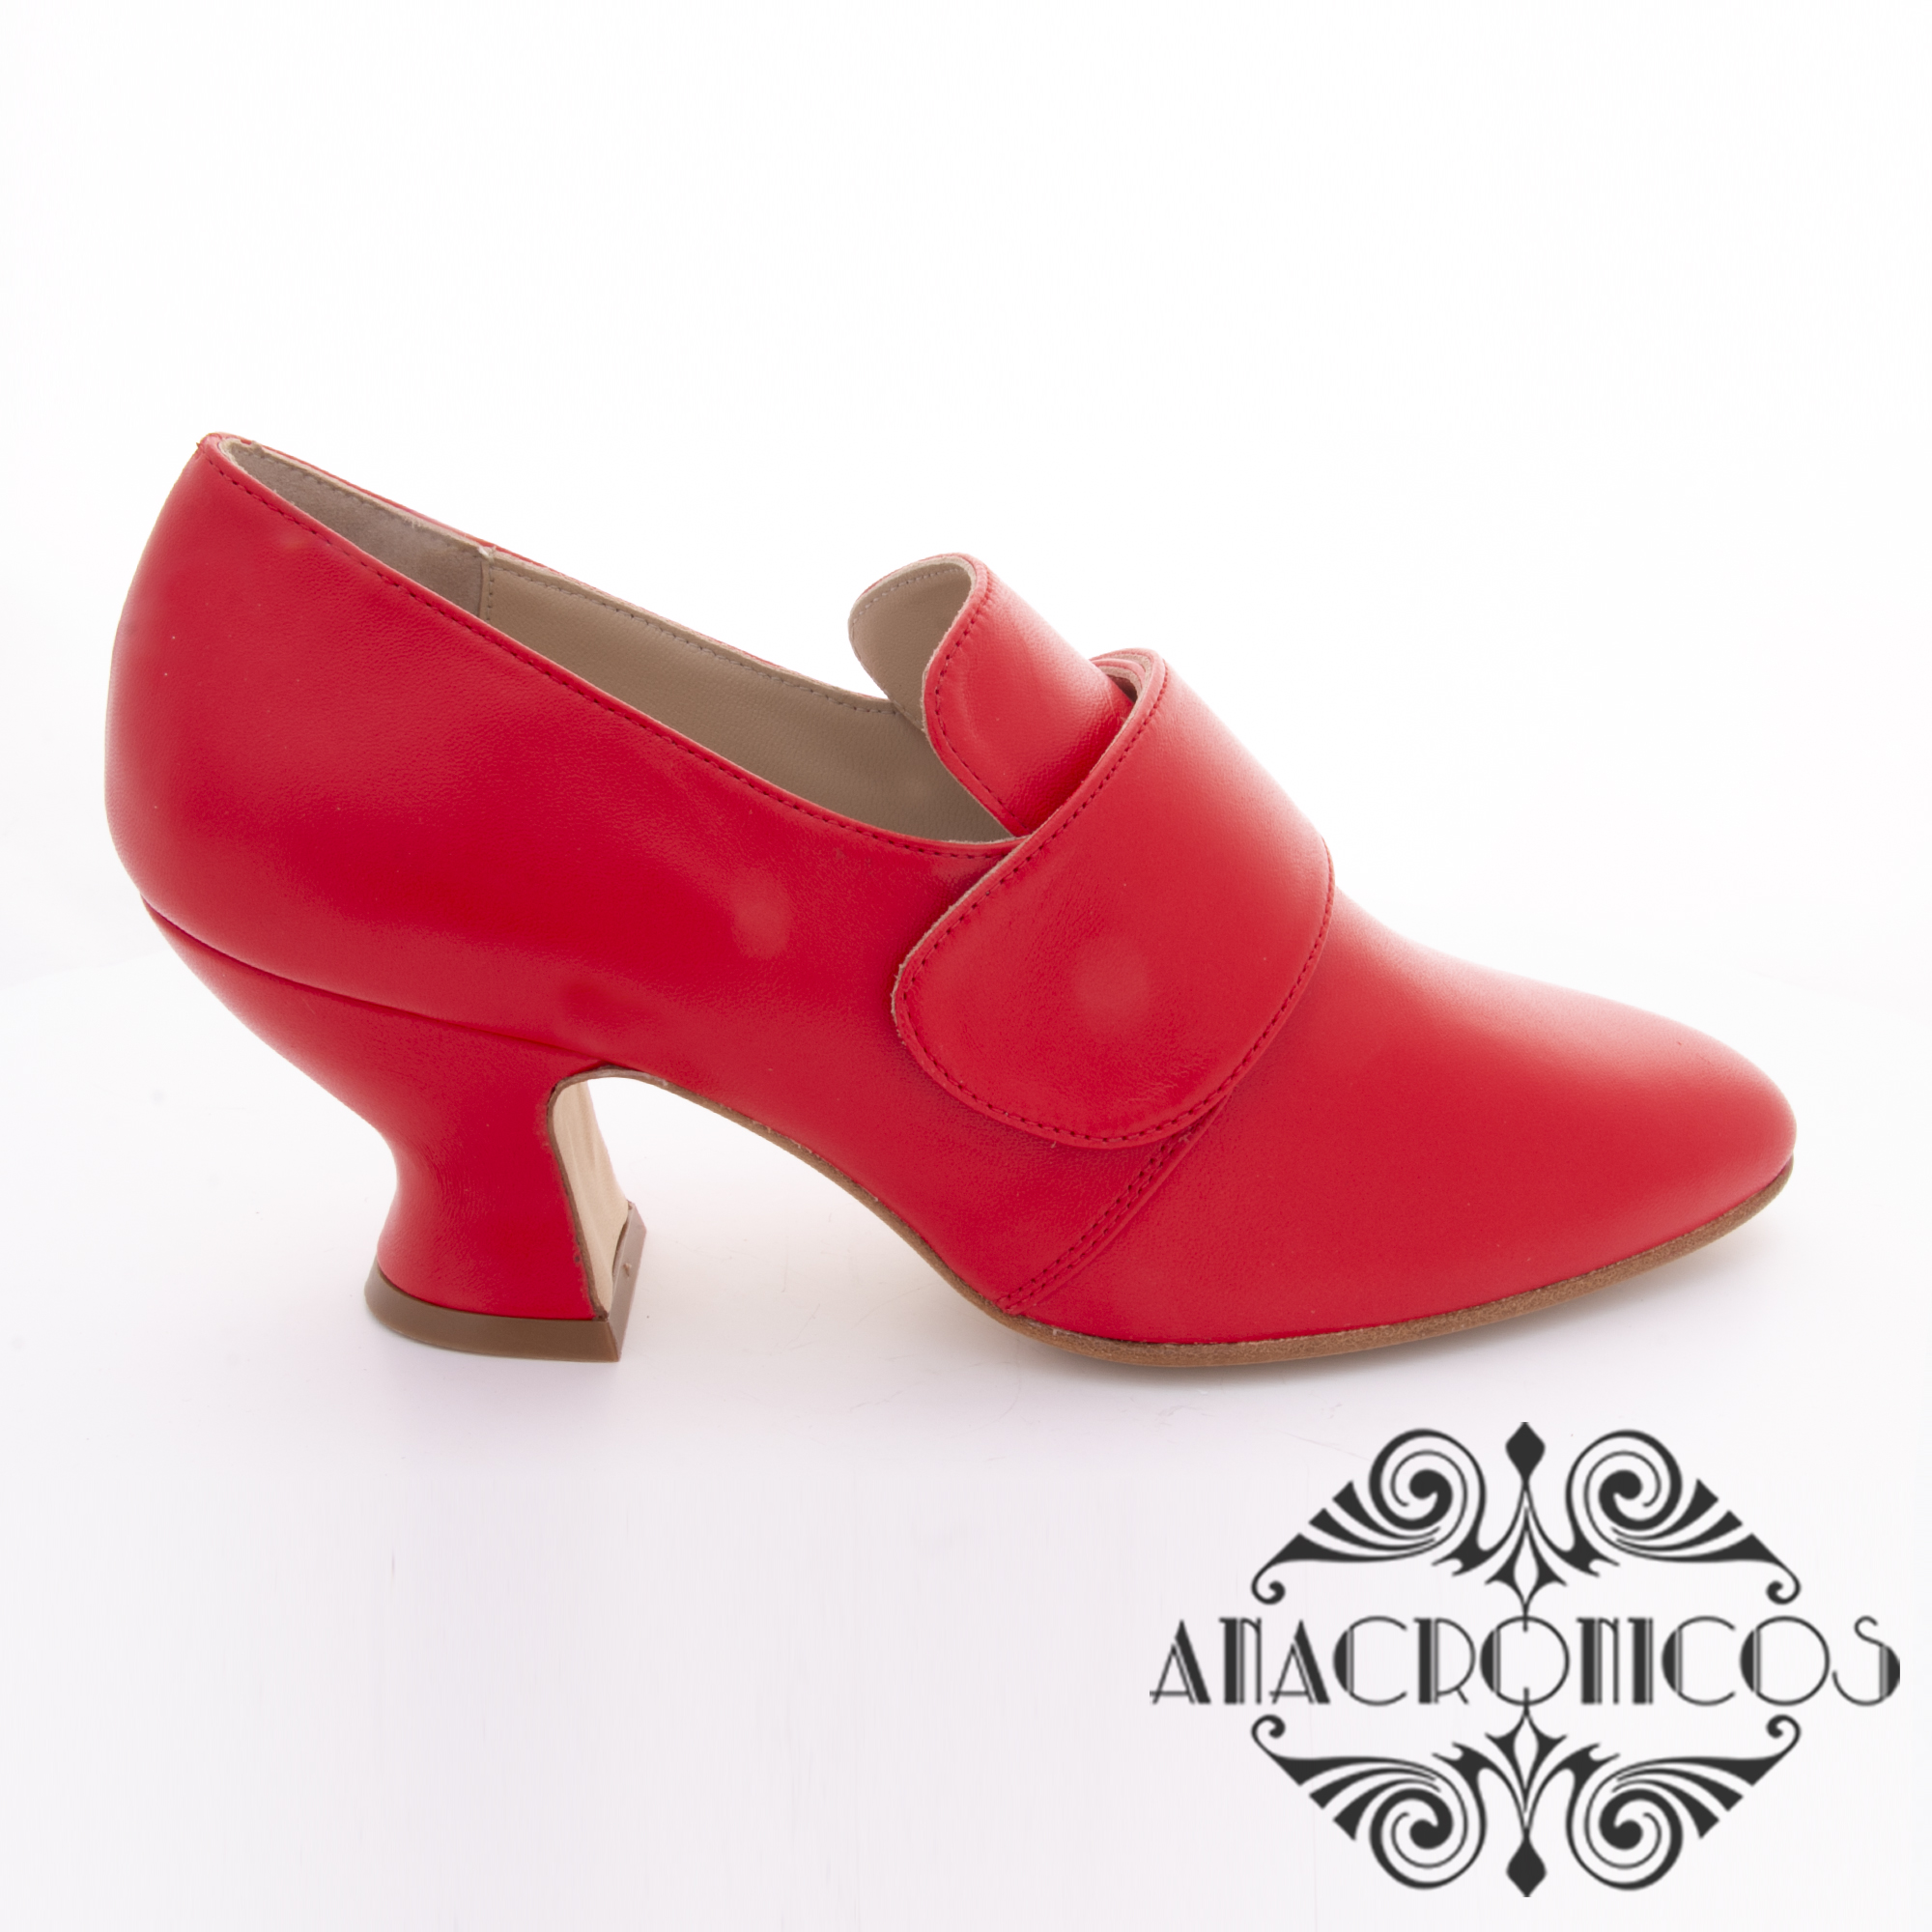 Zapato 18th Sil.la Roja - Anacronicos